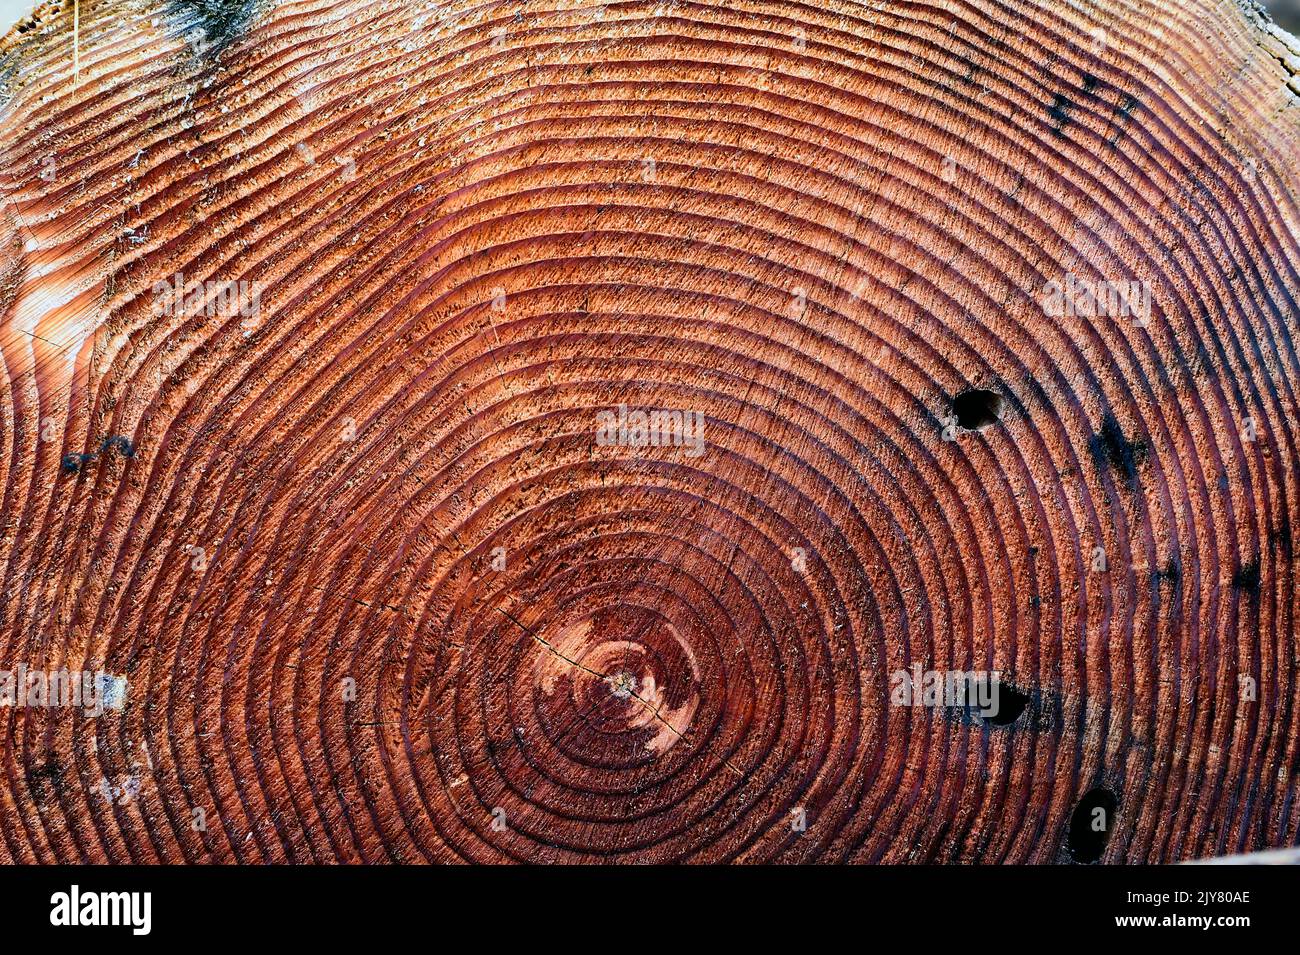 Una sección transversal de un tronco de árbol que muestra los anillos de crecimiento del árbol. Foto de stock